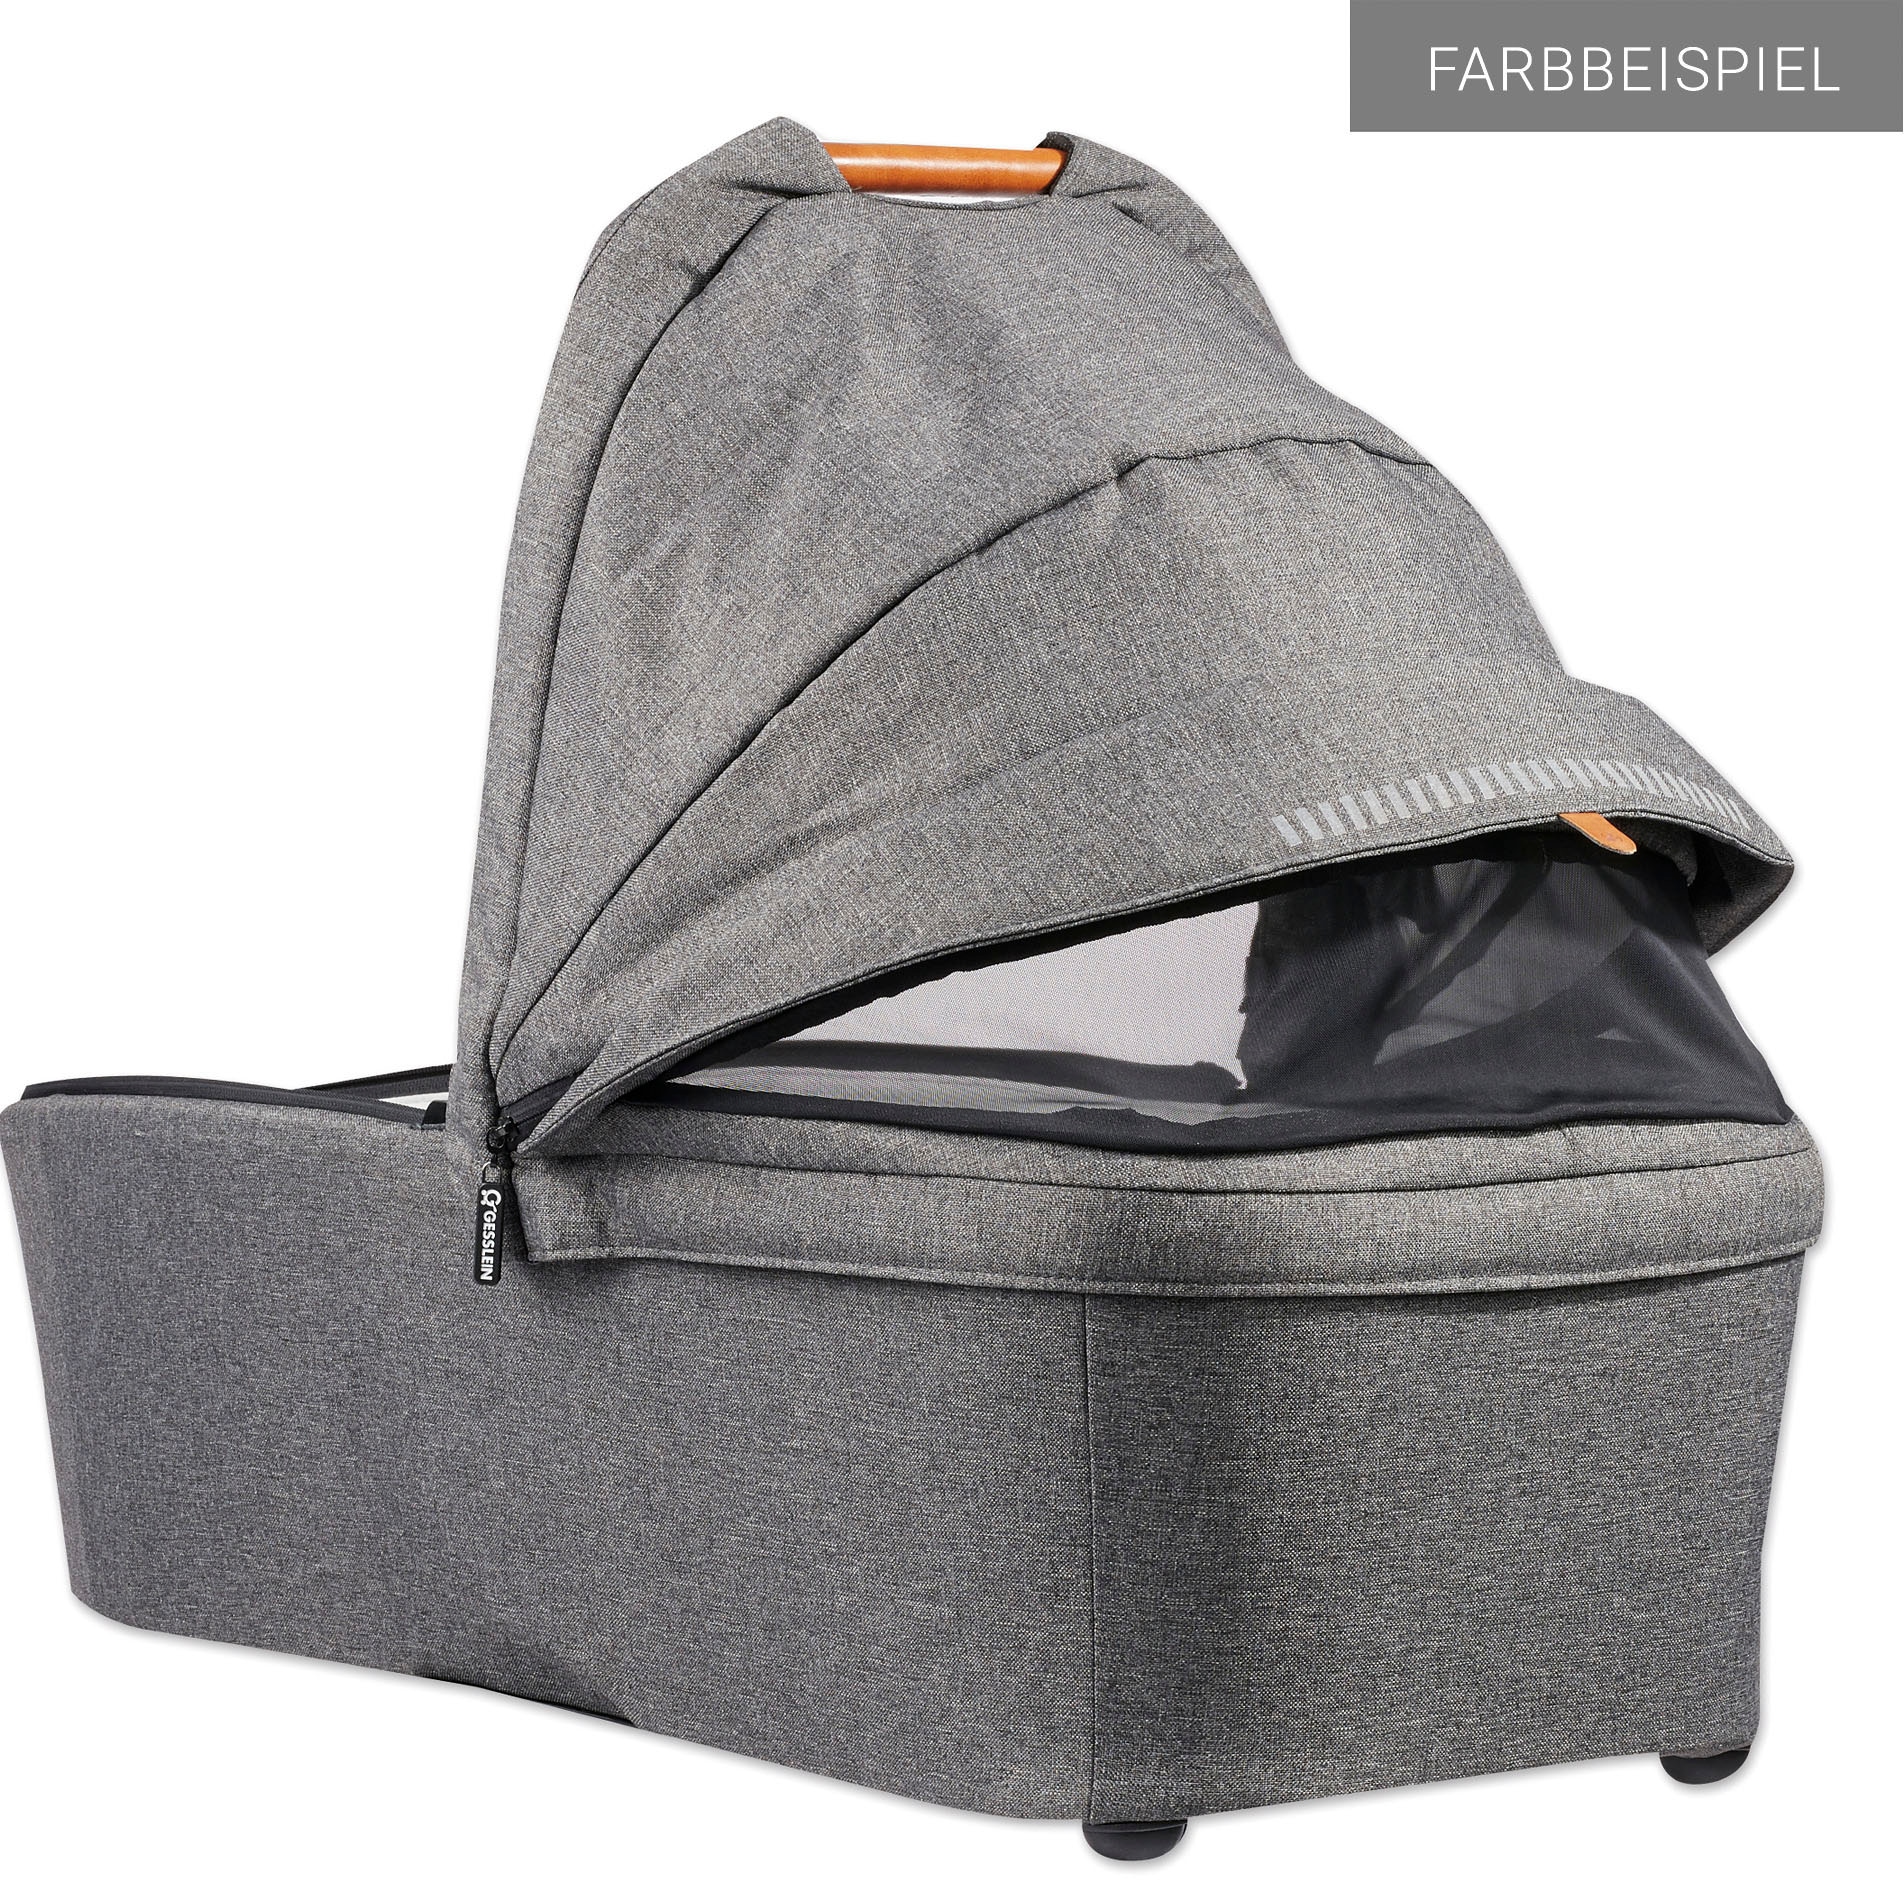 Gesslein Kombi-Kinderwagen »FX4 Soft+ mit Aufsatz Style, moos/tabak«, mit Babywanne C3 und Babyschalenadapter